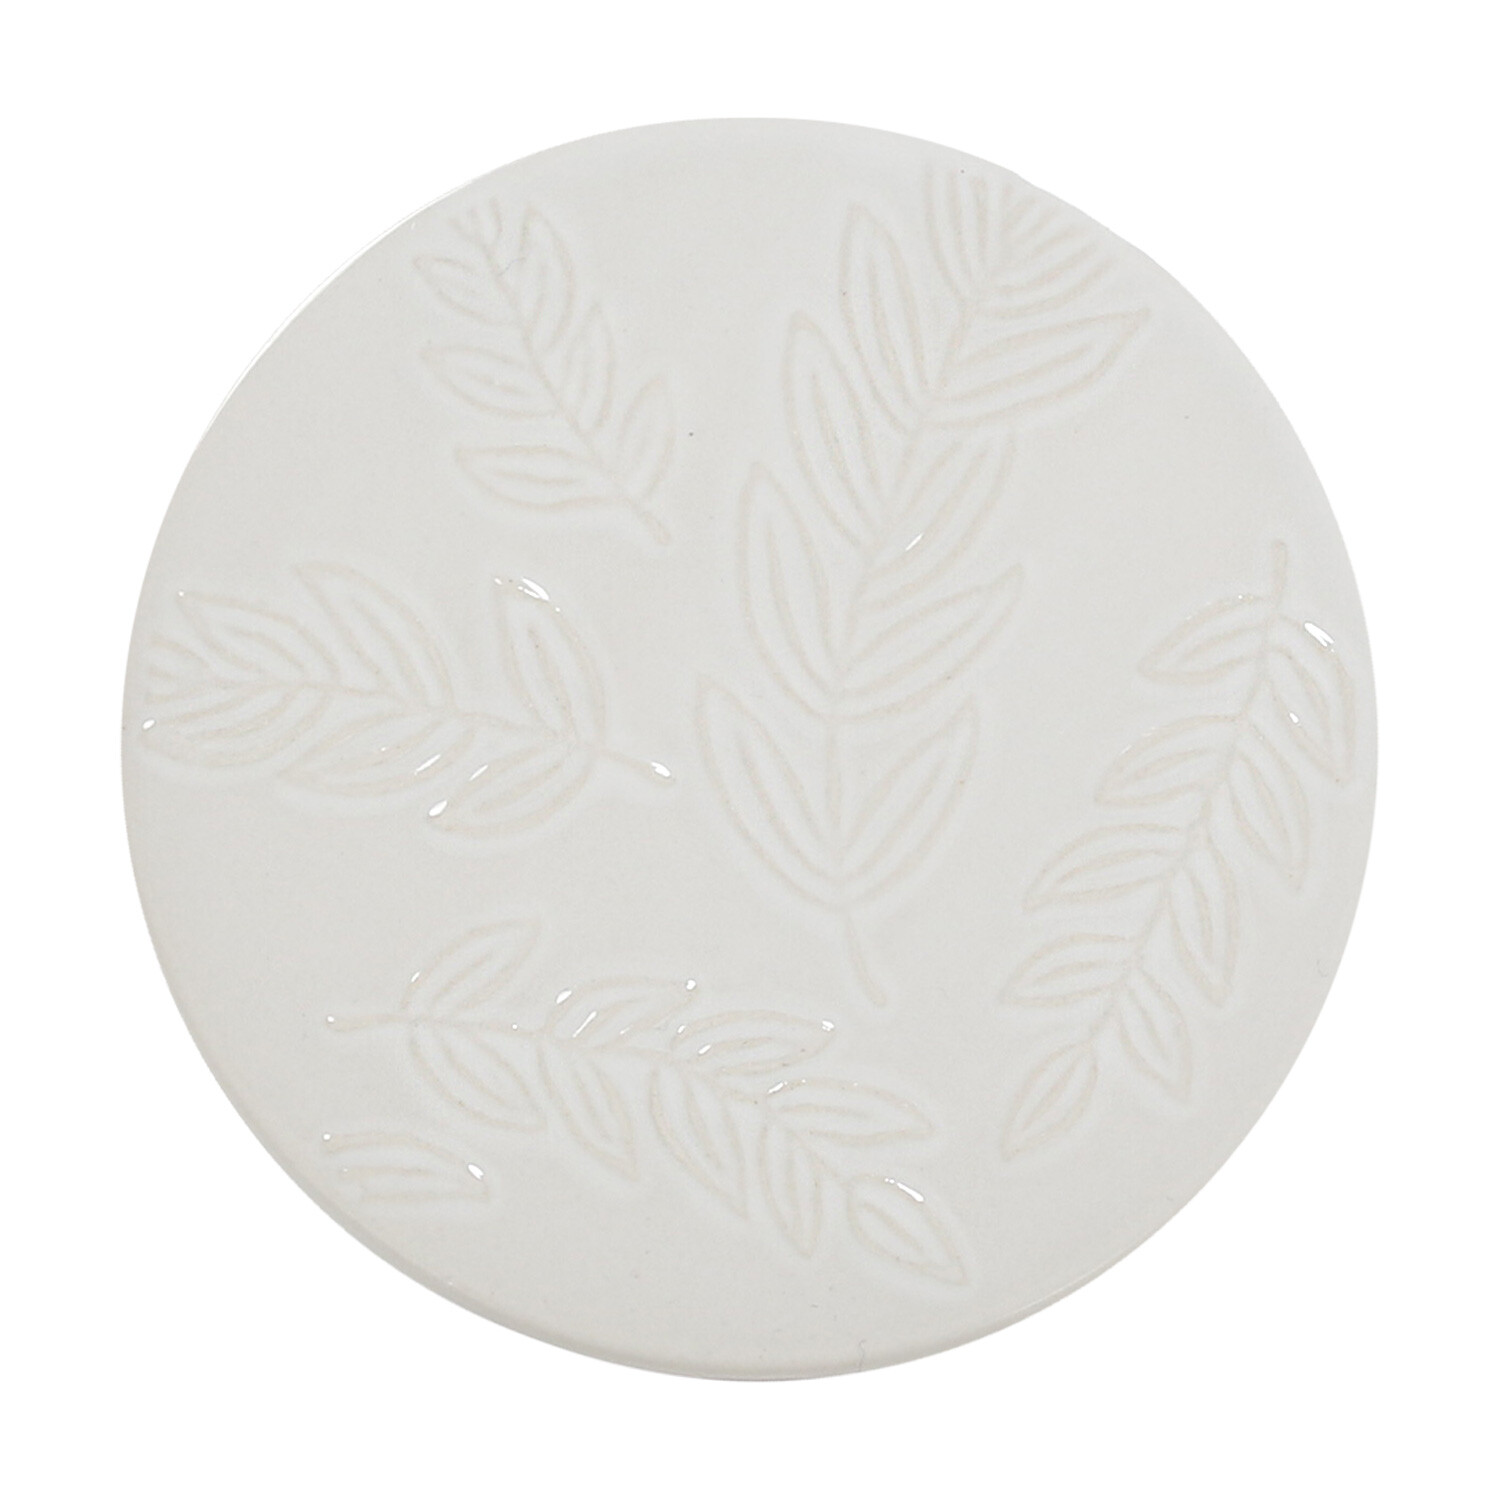 Botanical Ceramic Coaster Image 1